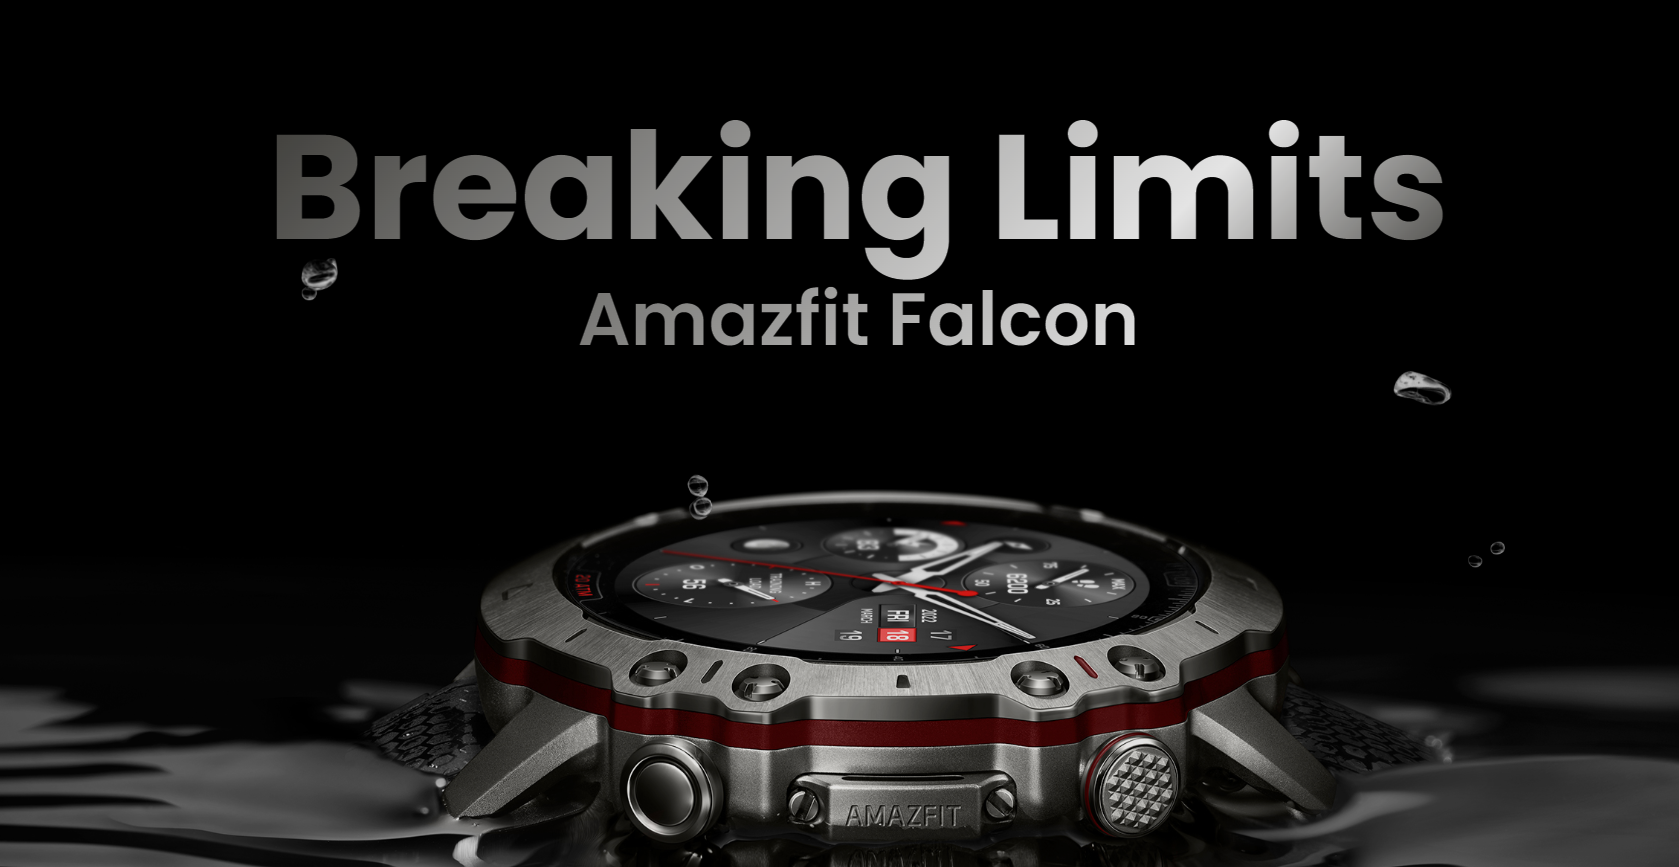 Einführung der Amazfit Falcon Smartwatch mit 20 ATM Schutz, 159 Sportmodi, GPS und SpO2 für $500